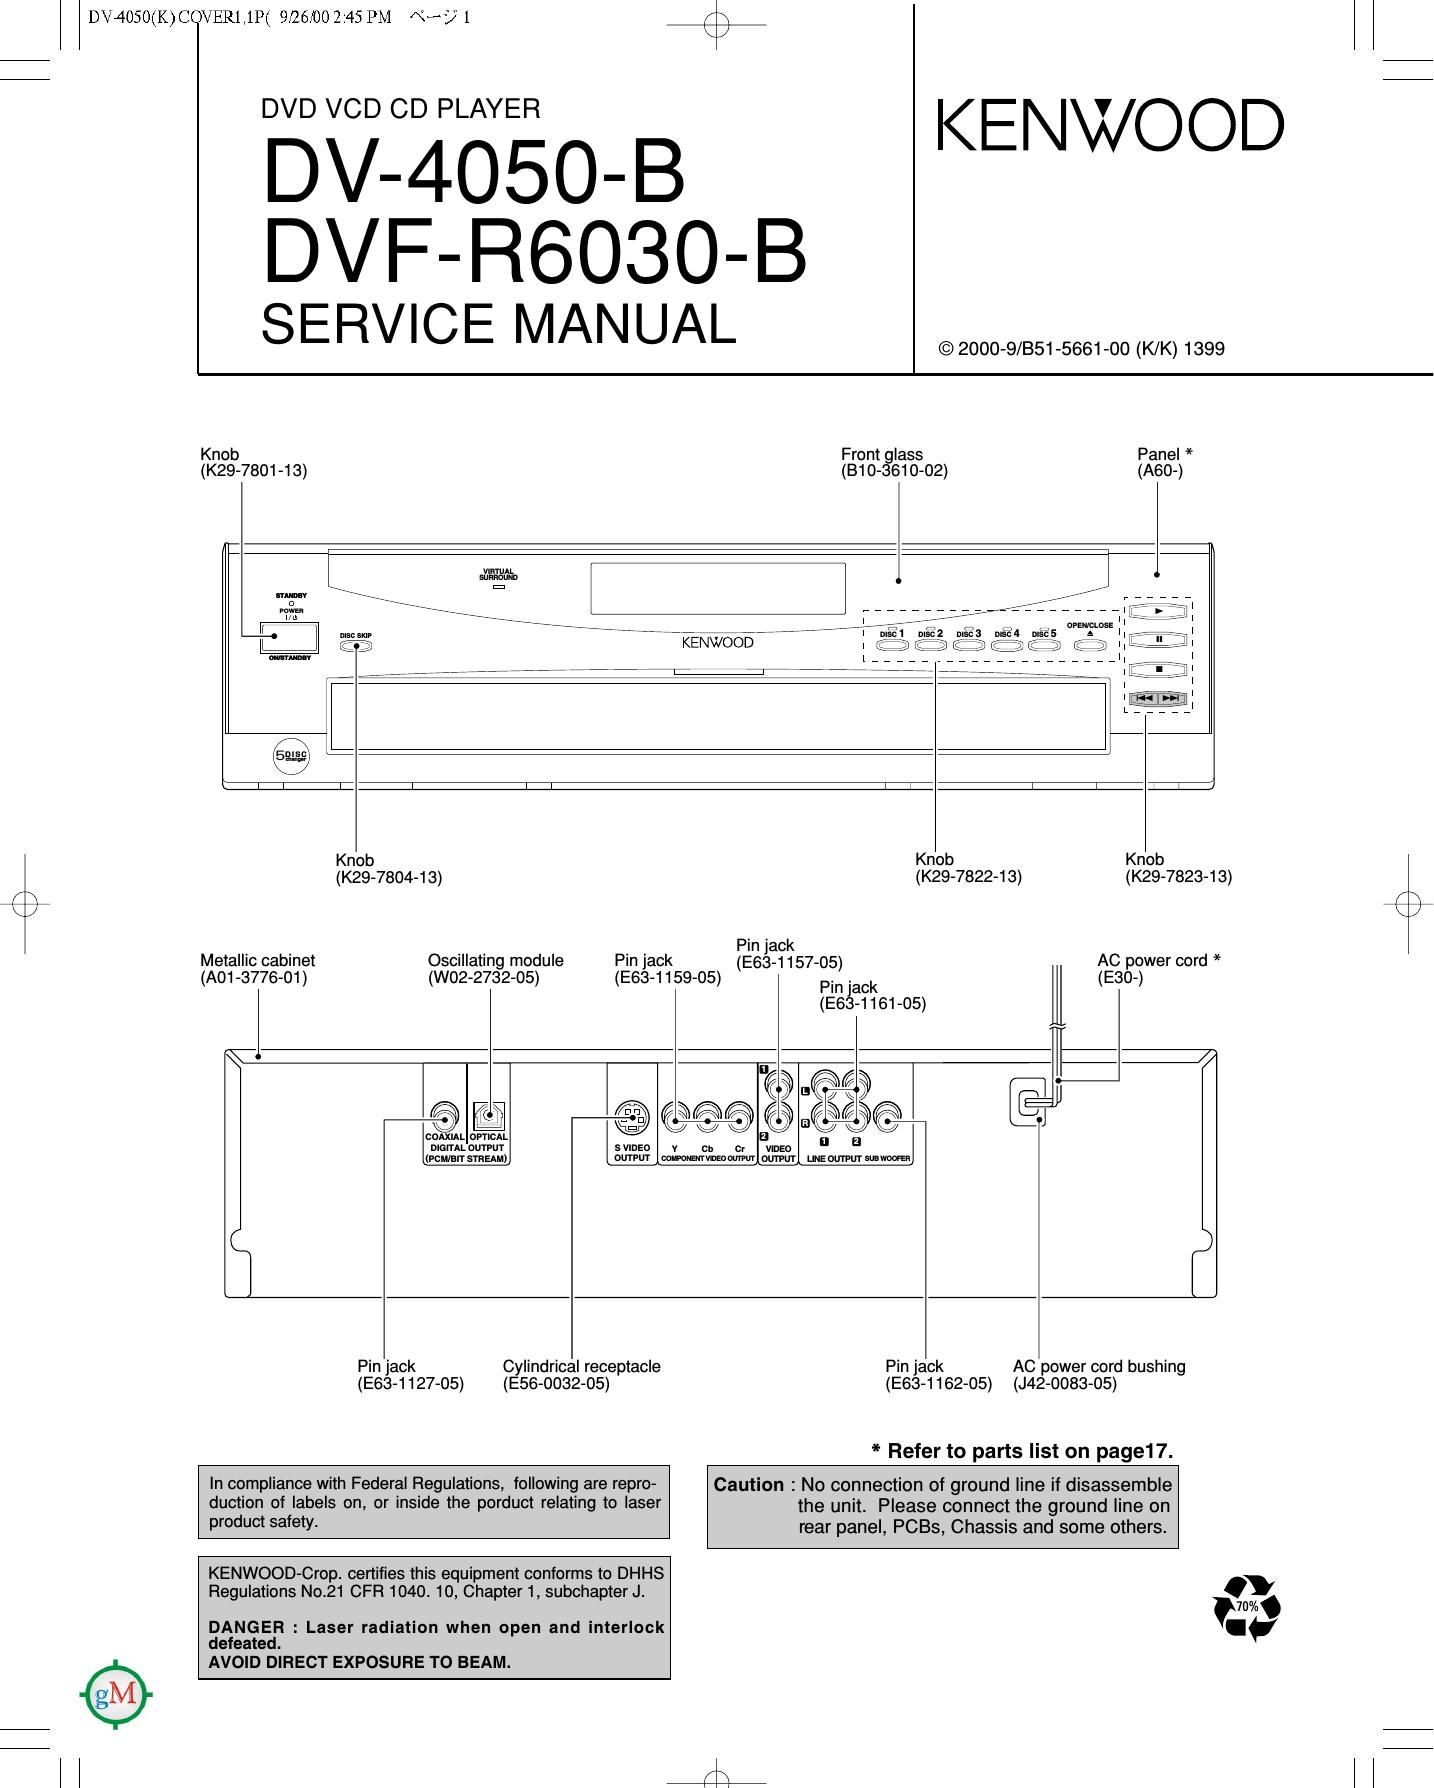 Kenwood DV 4050 B Service Manual